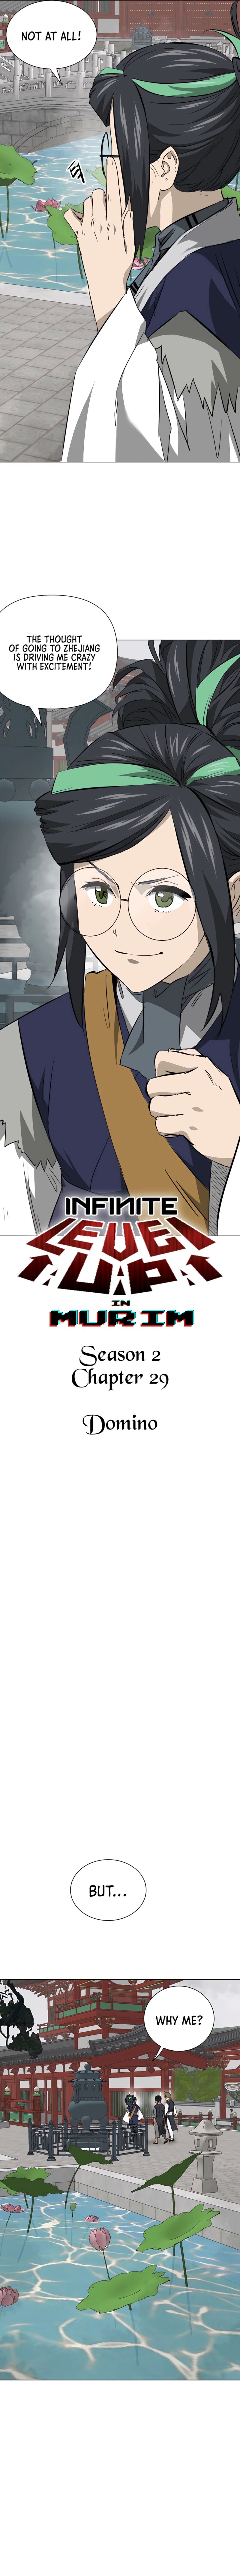 Infinite Leveling Murim 158 2